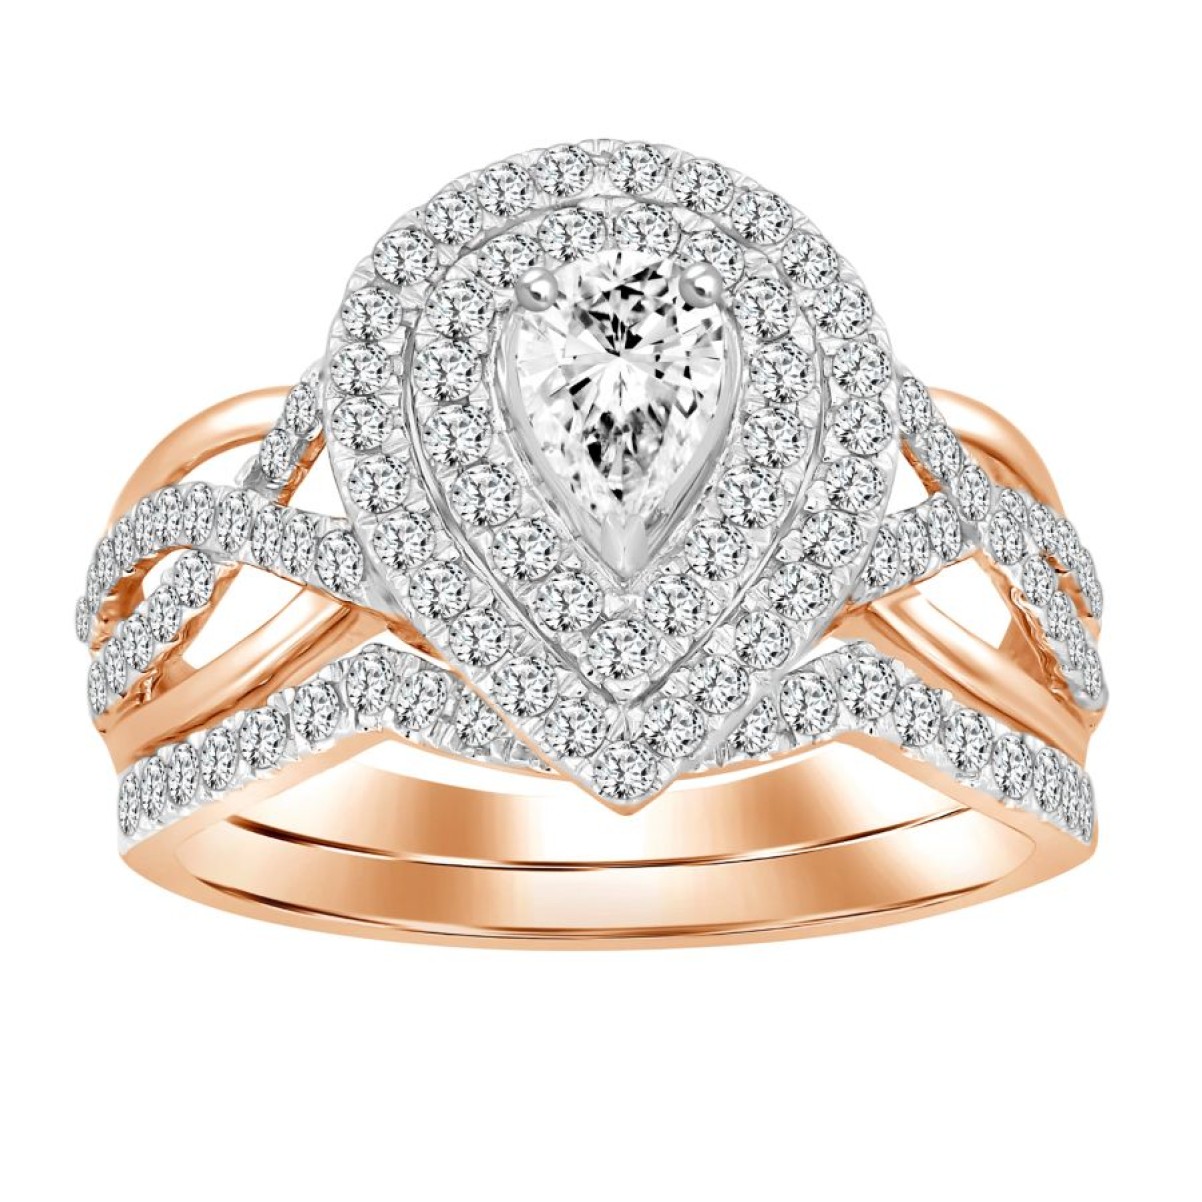 BRIDAL RING SET 1.00CT ROUND/PEAR DIAMOND 14K ROSE GOLD